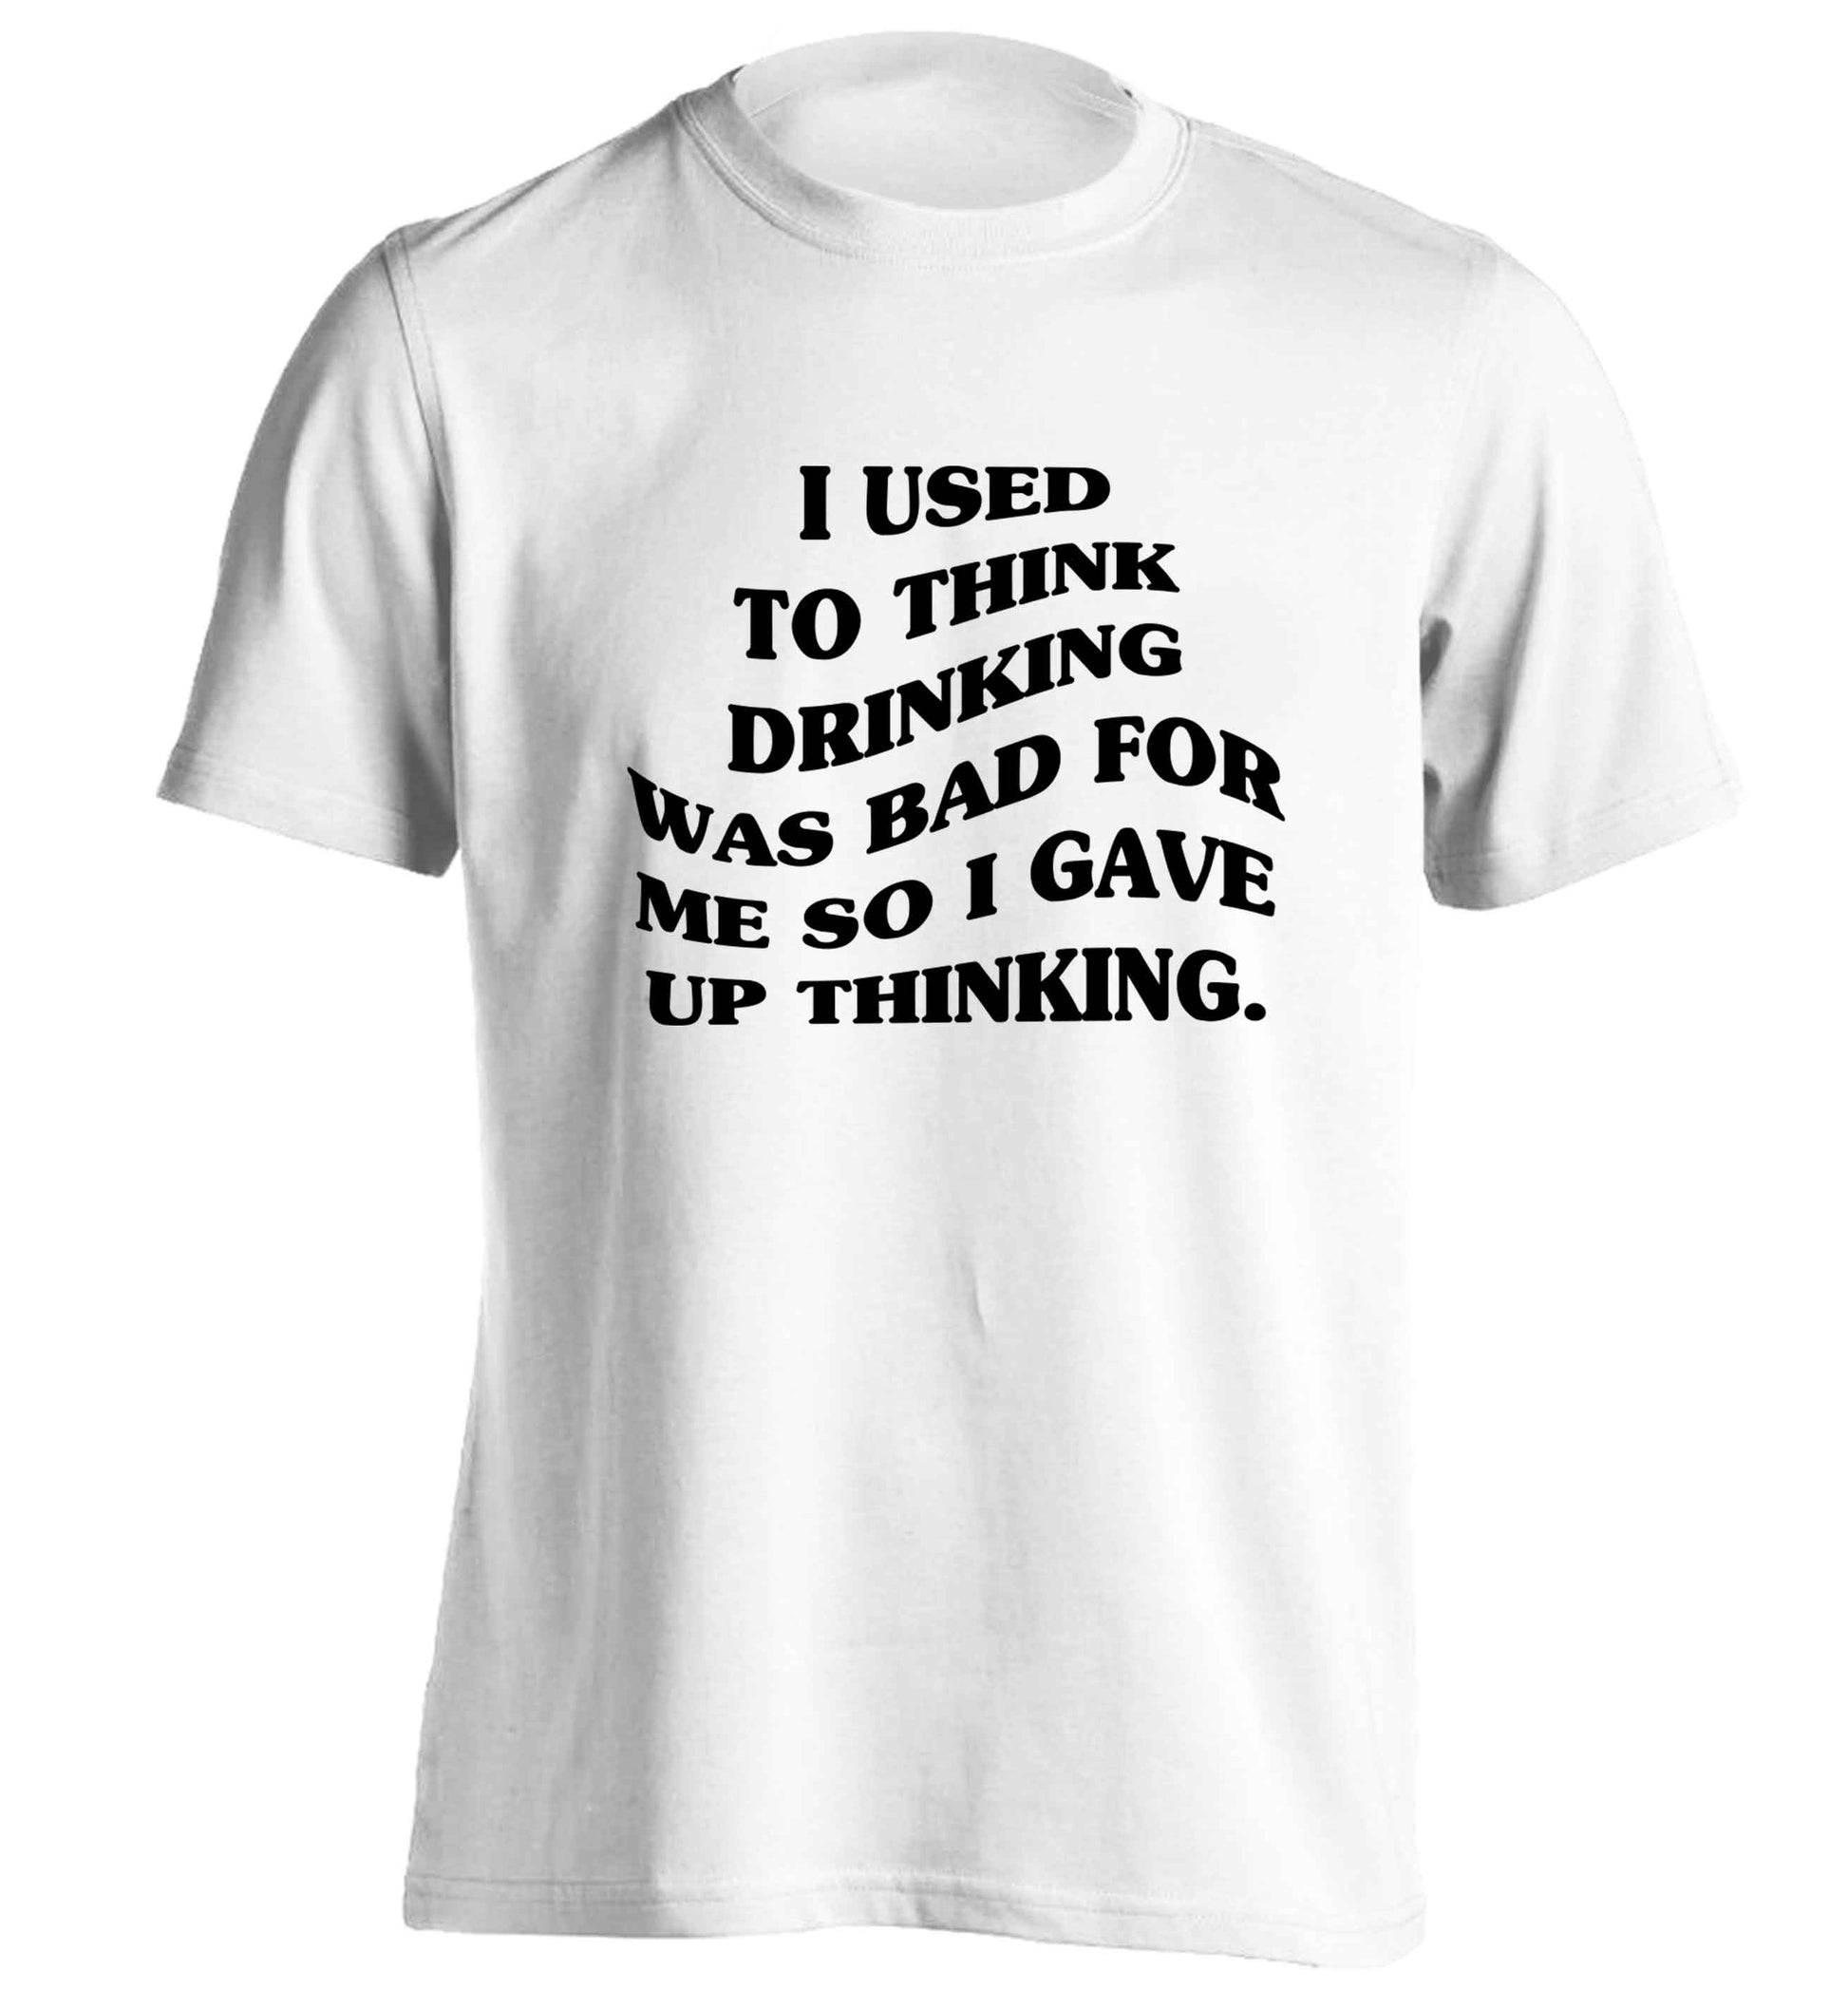 I used to think drinking was bad so I gave up thinking adults unisex white Tshirt 2XL